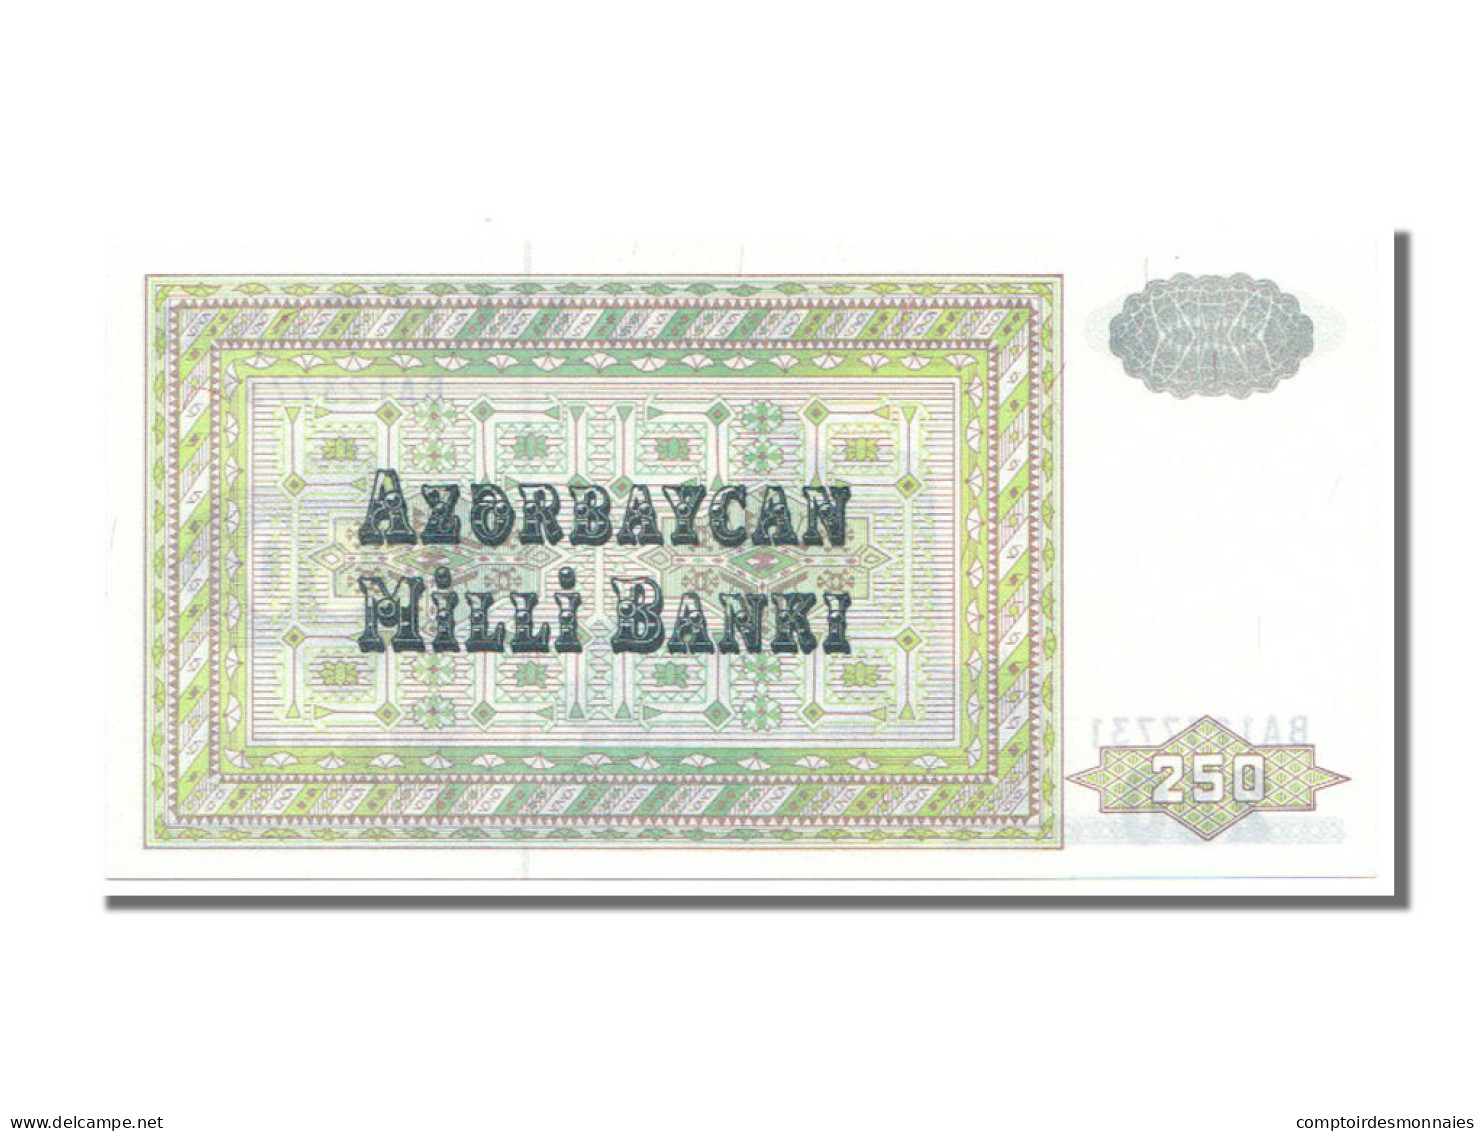 Billet, Azerbaïdjan, 250 Manat, 1992, NEUF - Azerbaïdjan